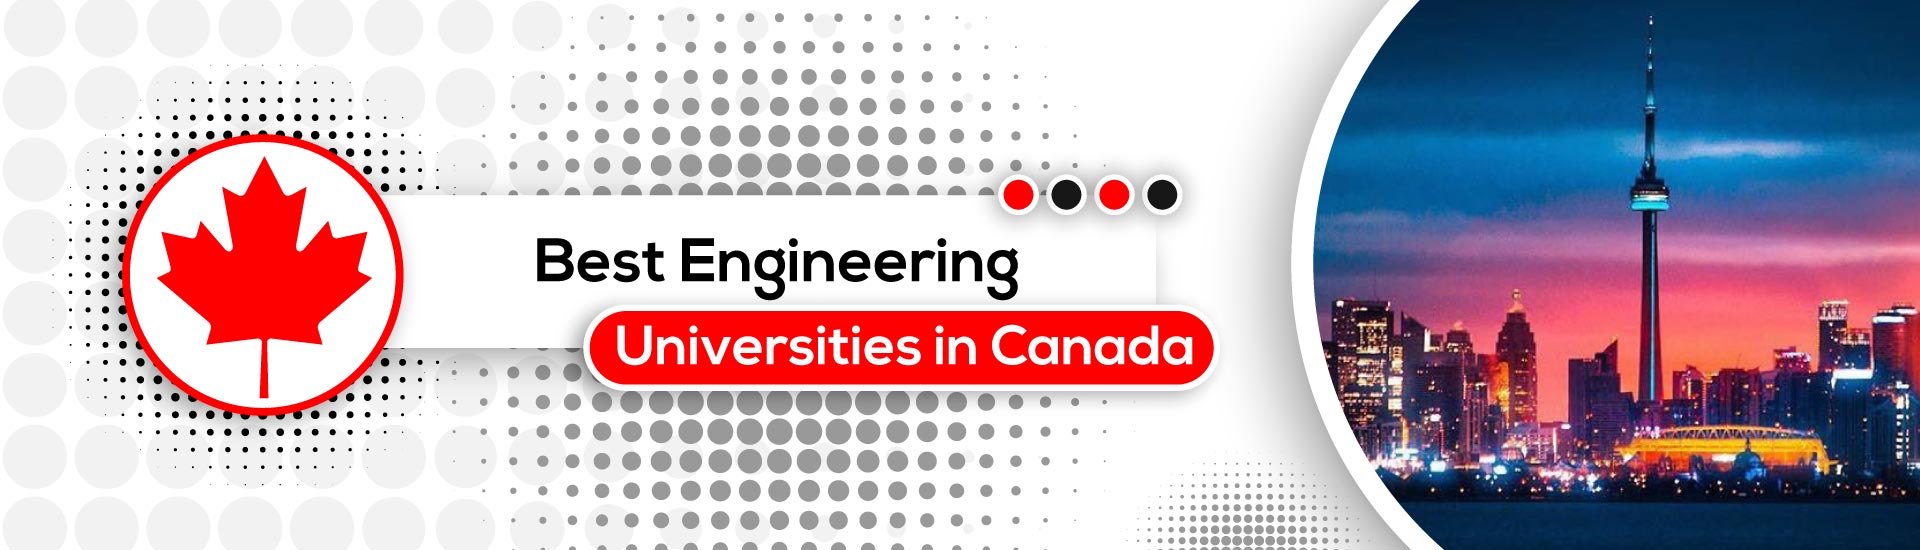 Best Engineering universities in Canada